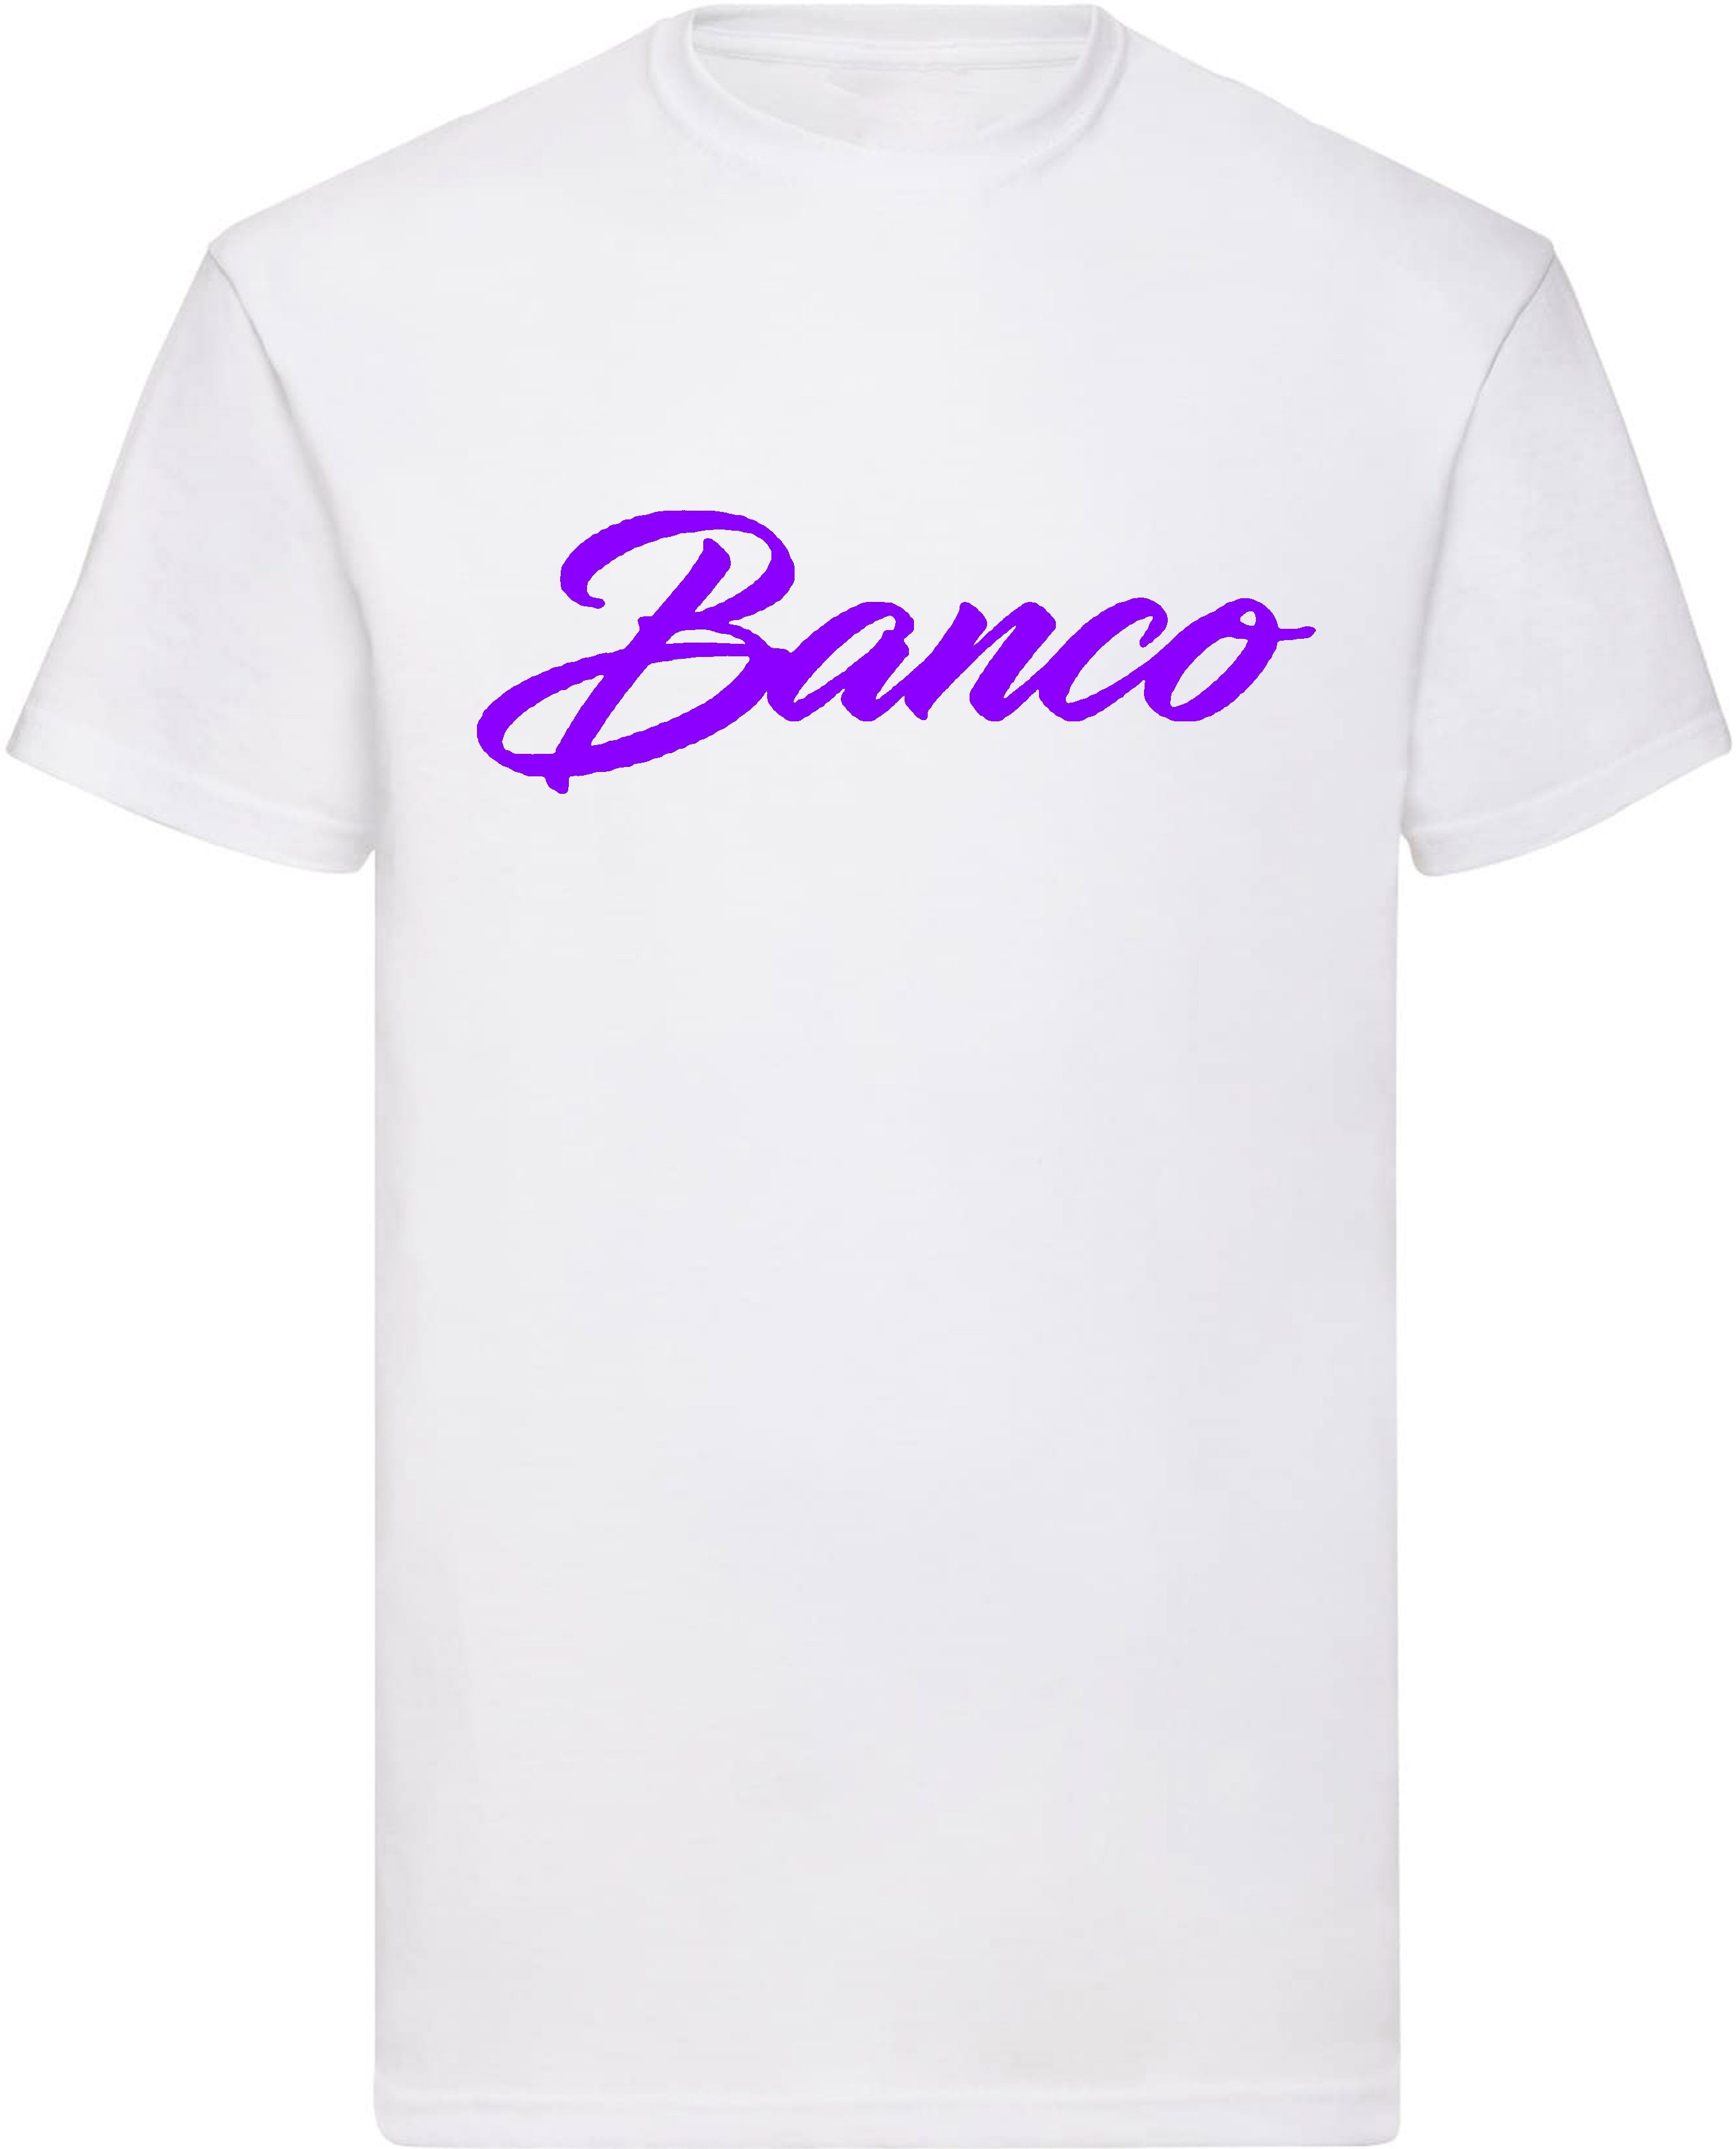 Banco T-Shirt Kurzarm 100% Baumwolle Rundhals Shirt Sommer Sport Freizeit Streetwear WeißLila